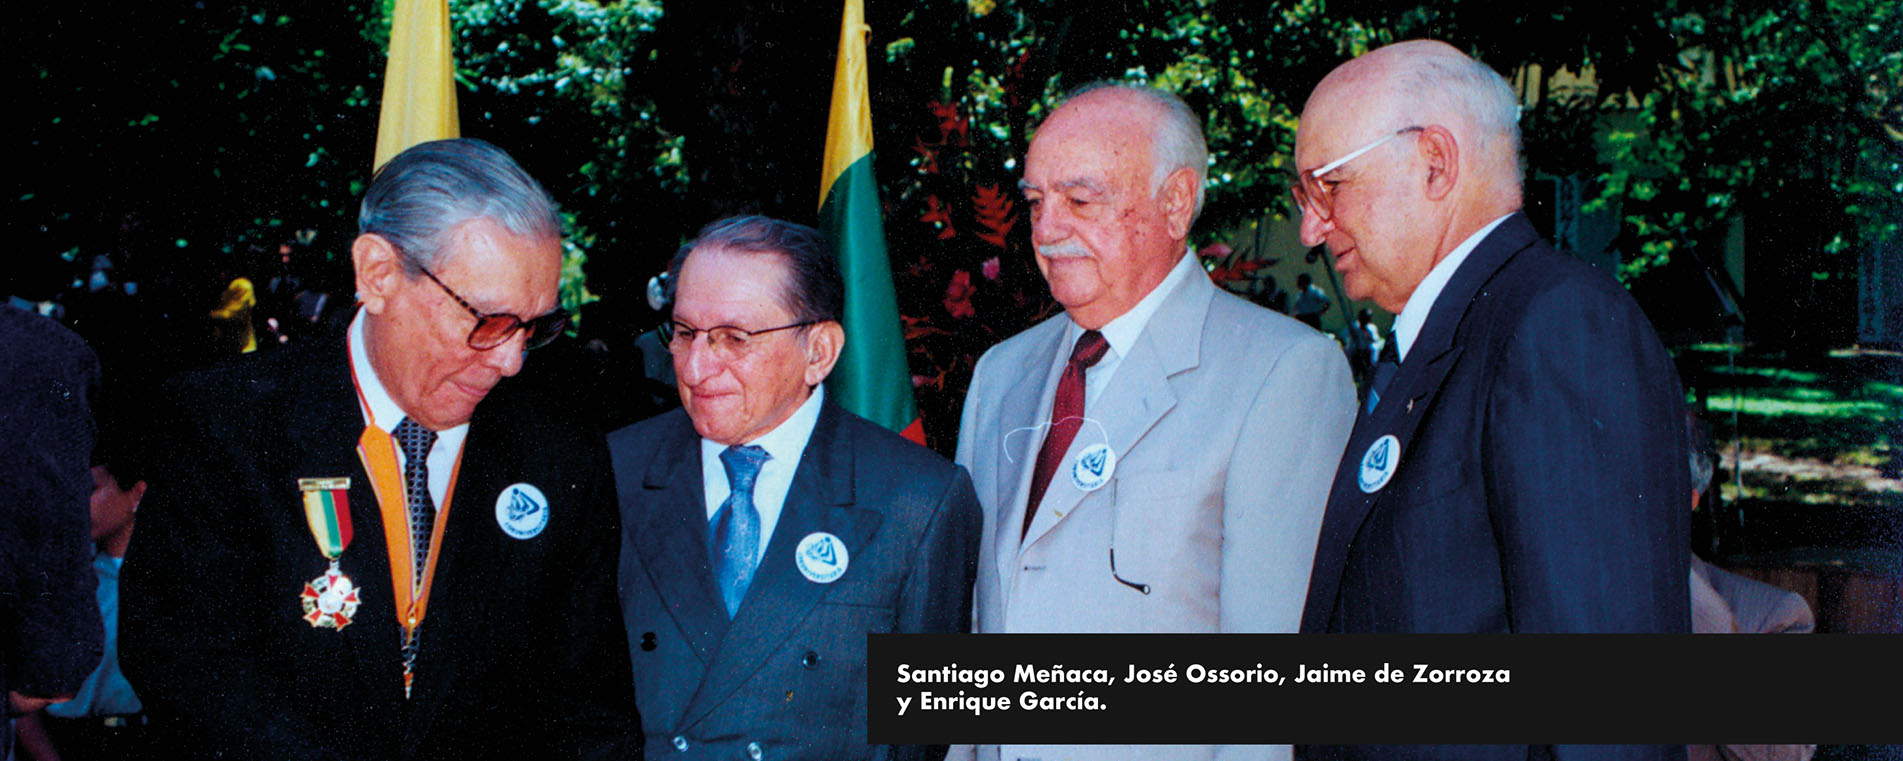 Imagen de Santiago Meñaca, José Ossorio, Jaime de Zorroza y Enrique García